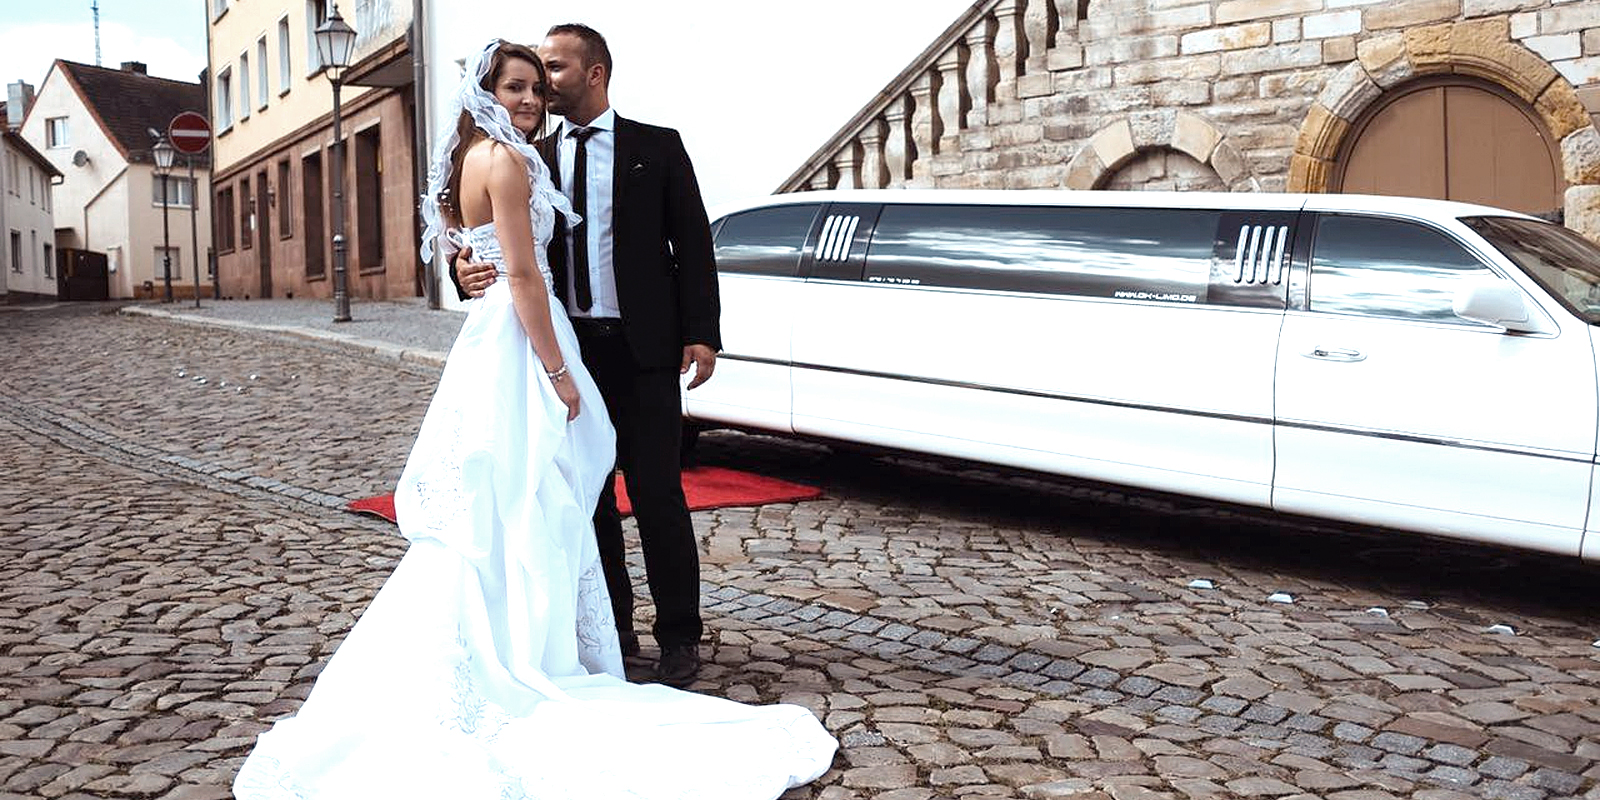 Brautpaar vor weisser Hochzeitslimousine vom Limousinenservice OK-Limo stehend